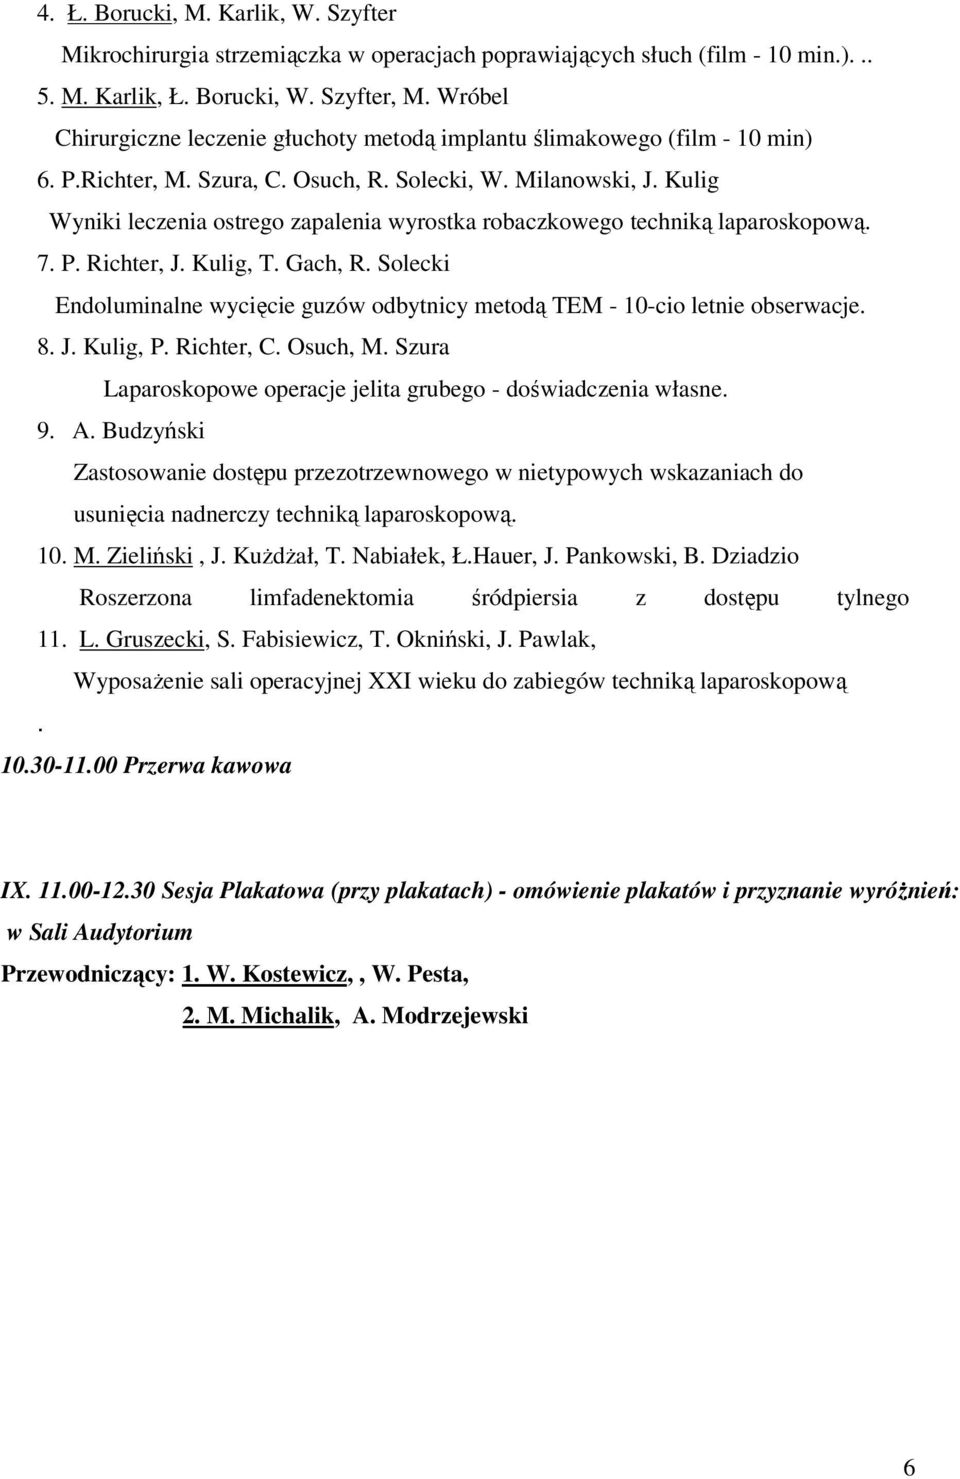 Kulig Wyniki leczenia ostrego zapalenia wyrostka robaczkowego techniką laparoskopową. 7. P. Richter, J. Kulig, T. Gach, R.